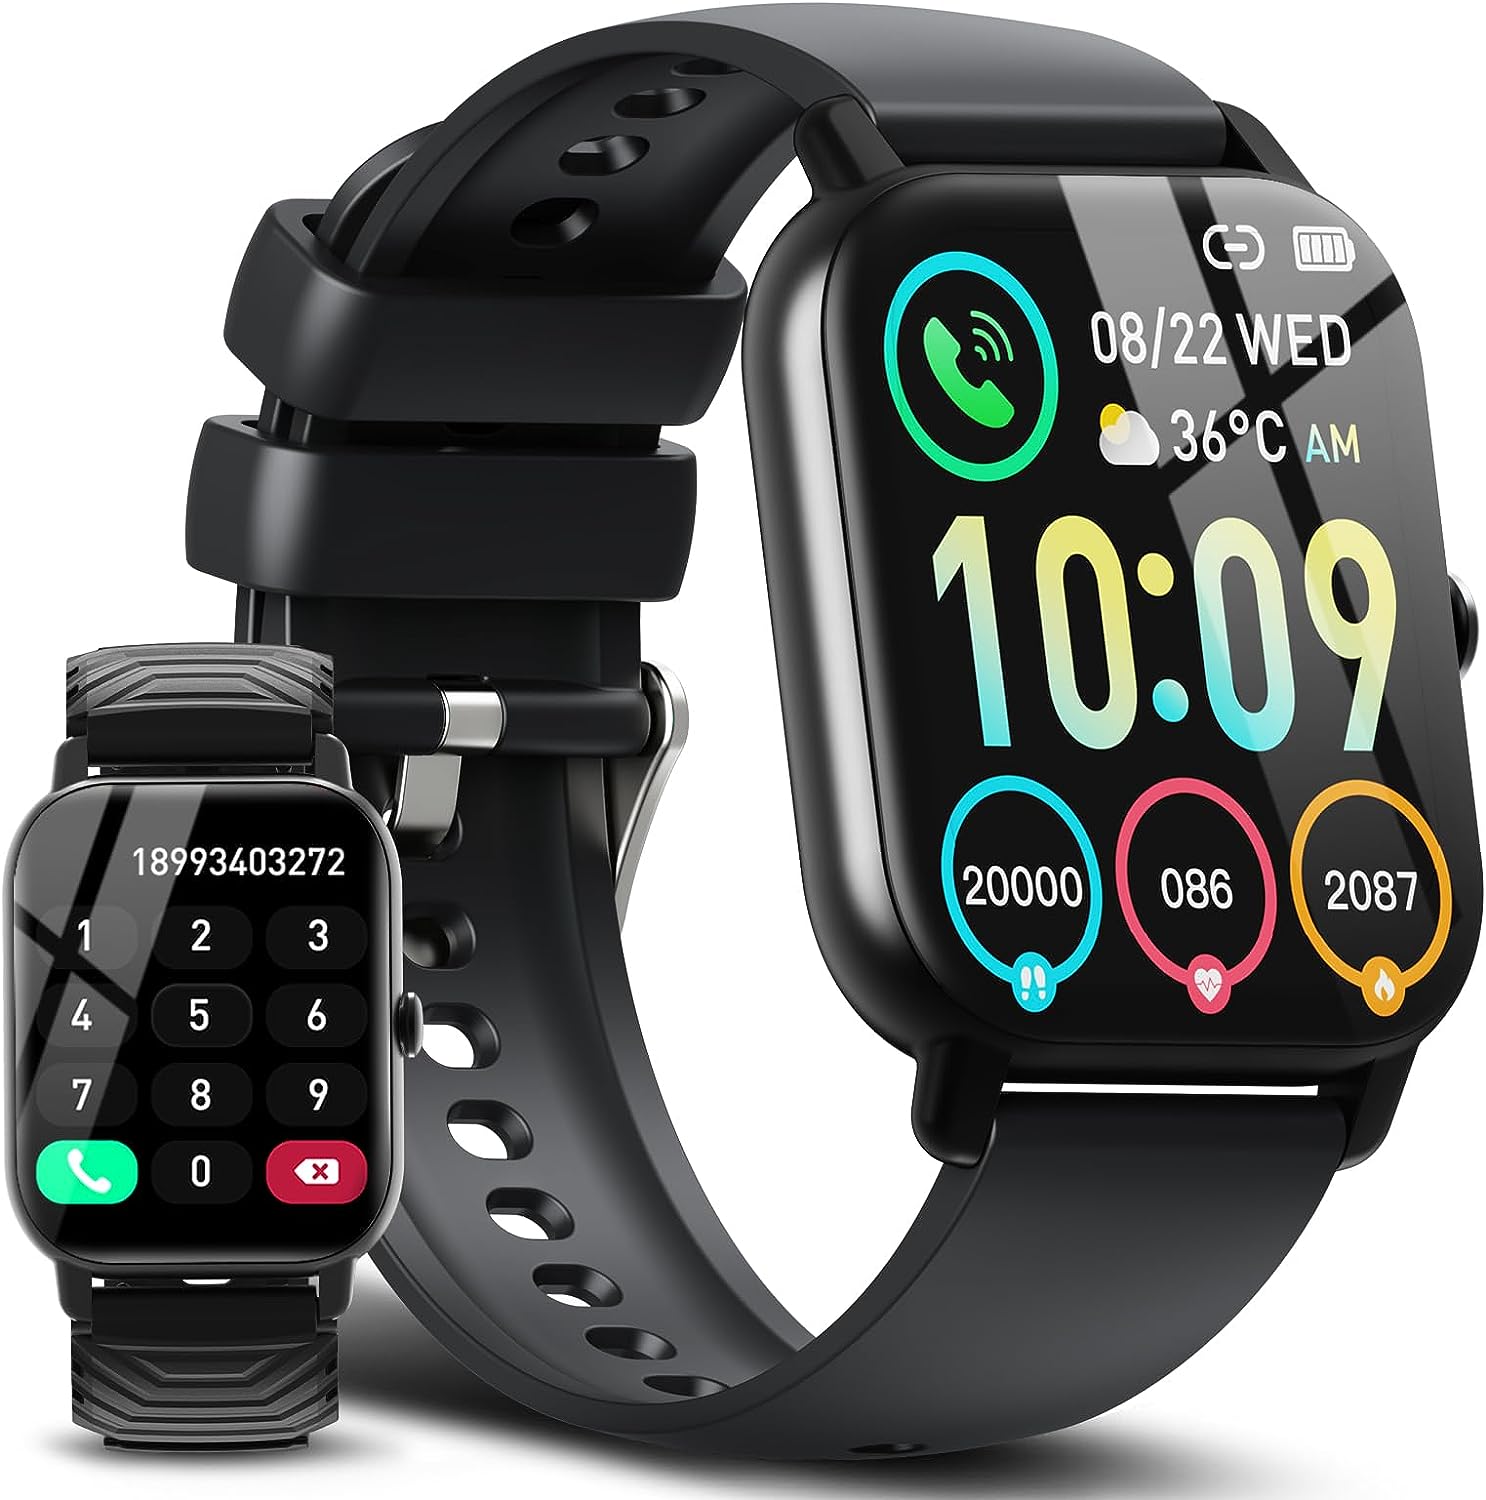 Est-ce que la smartwatch dispose d’un écran tactile et quelle est sa résolution ?插图